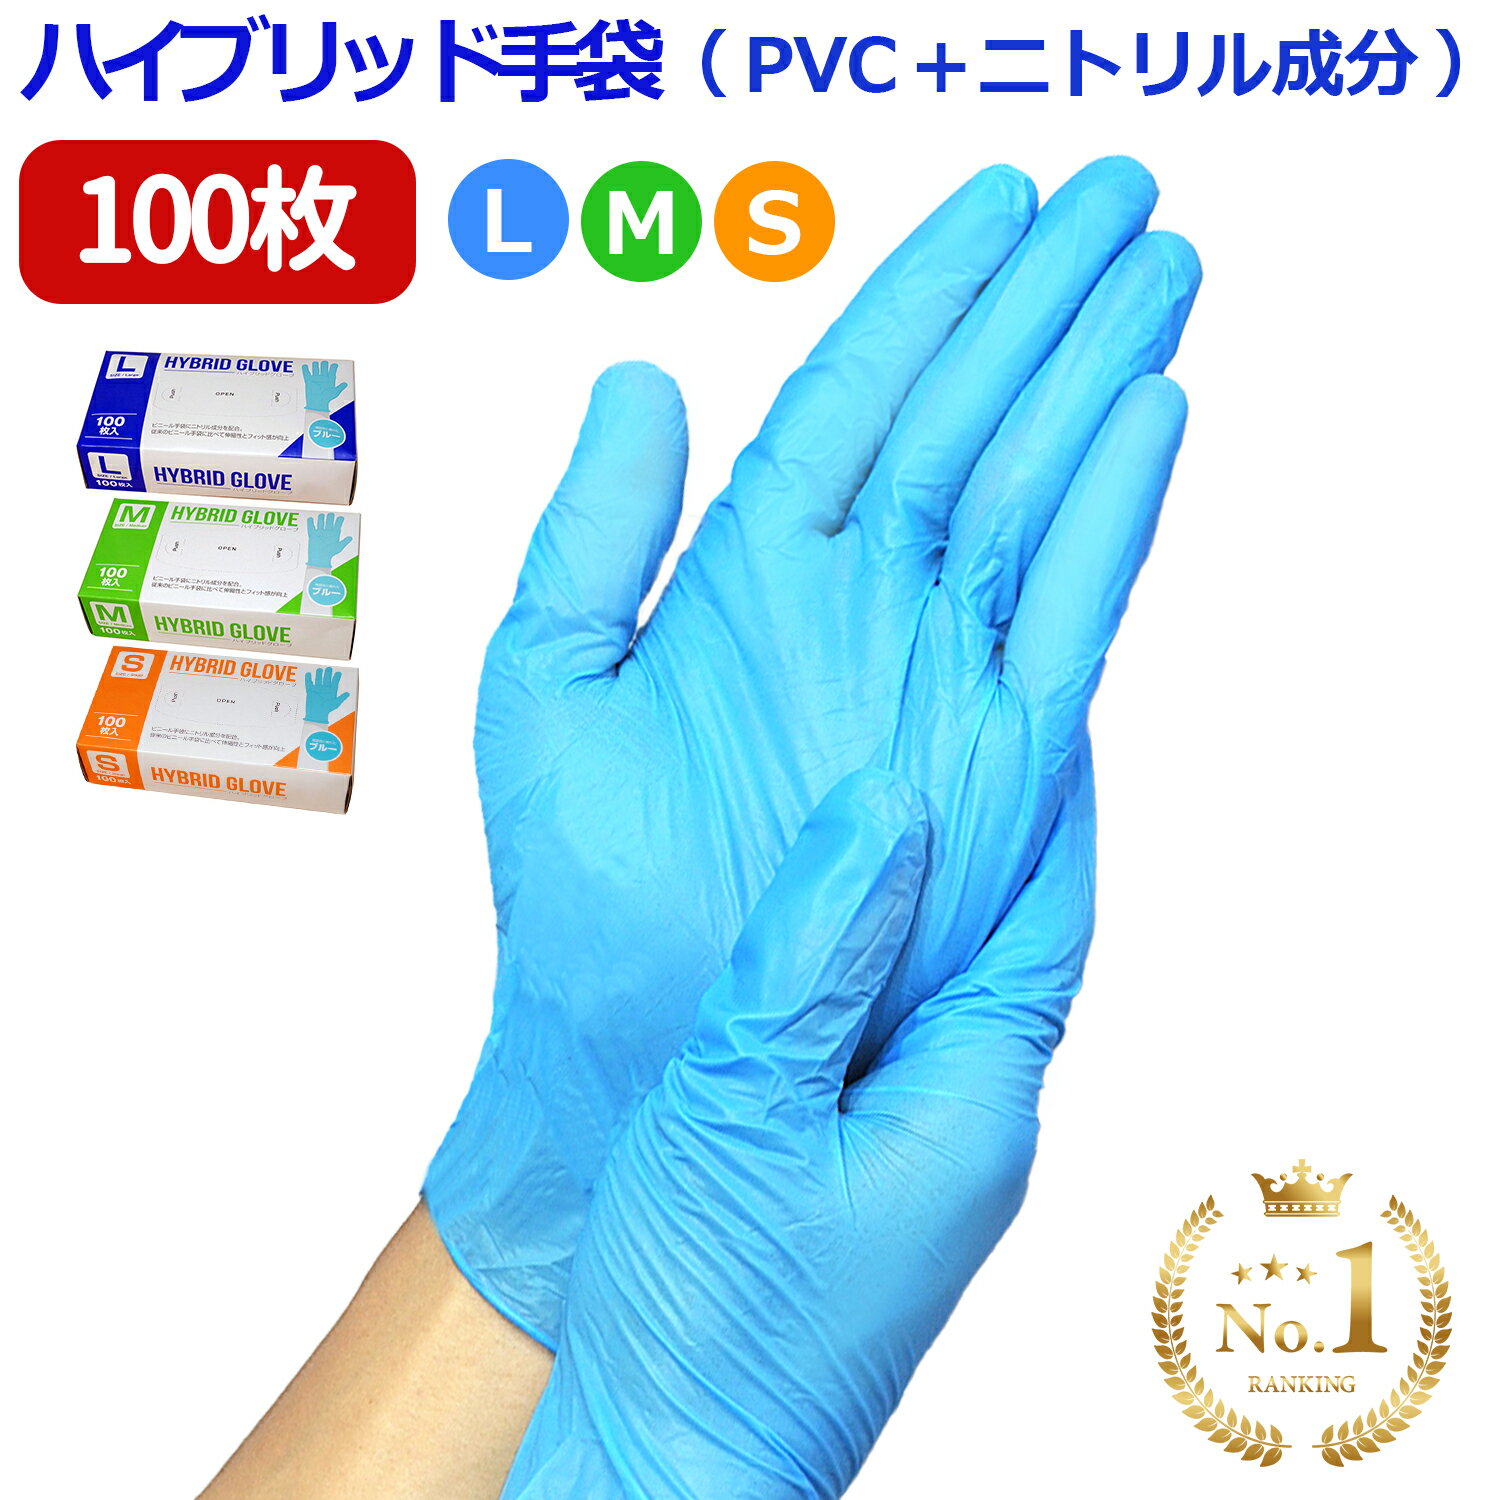 ＼P5倍／ 【送料無料】 使い捨て手袋 ゴム手袋 100枚入 ( PVC手袋 + ニトリル ) ハイブリッド手袋 プラスチックグロ…